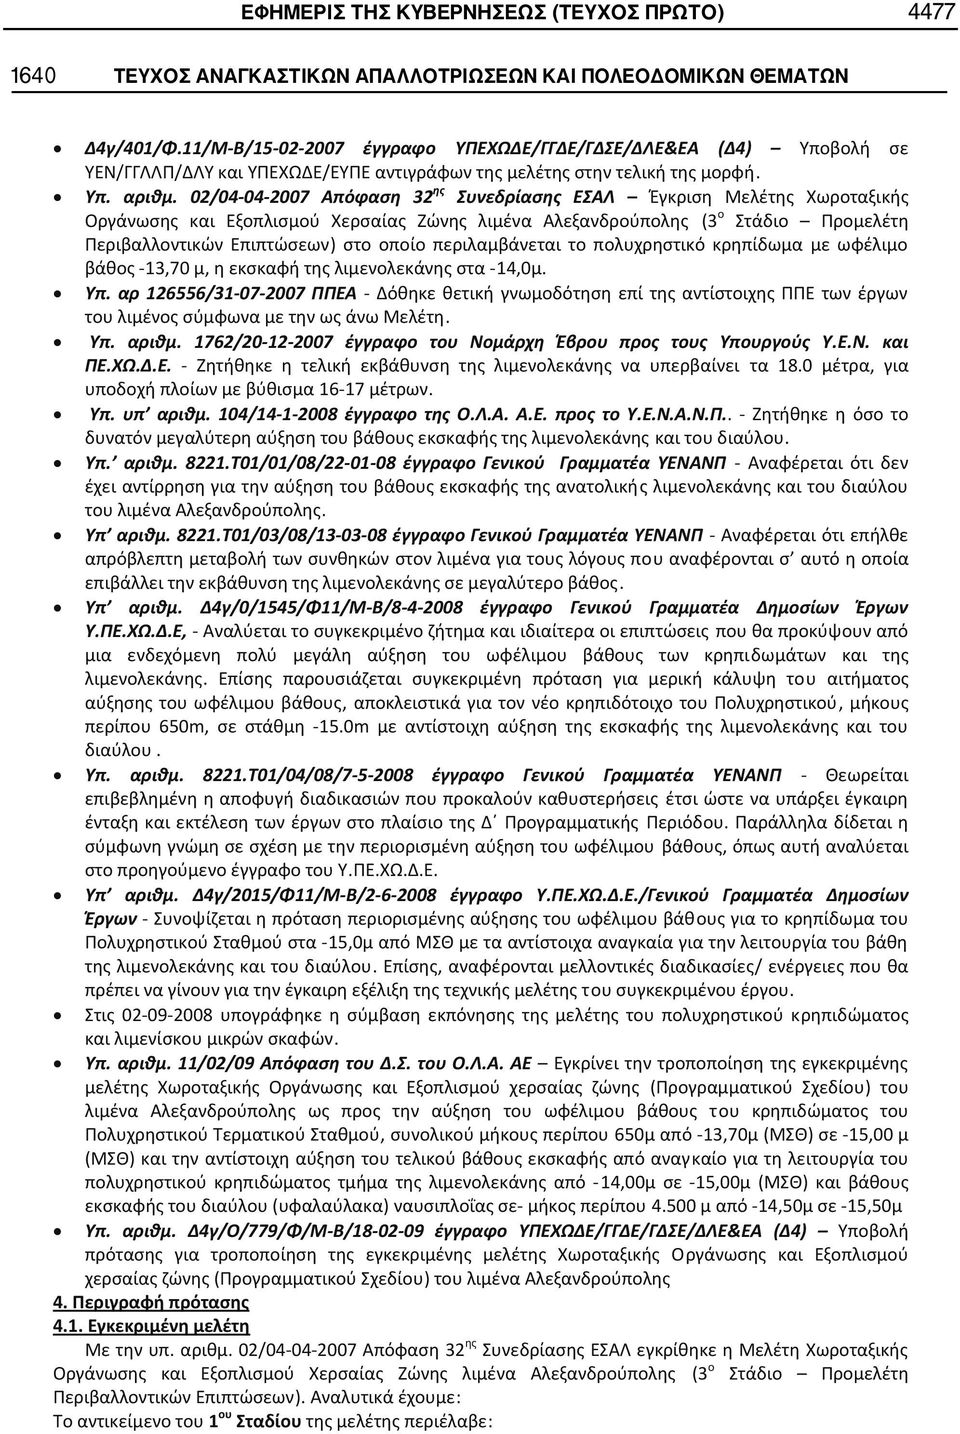 .. 02/04 04 2007 32 Έγκριση Μελέτης Χωροταξικής Οργάνωσης και Εξοπλισμού Χερσαίας Ζώνης λιμένα Αλεξανδρούπολης (3 ο Στάδιο Προμελέτη Περιβαλλοντικών Επιπτώσεων) στο οποίο περιλαμβάνεται το